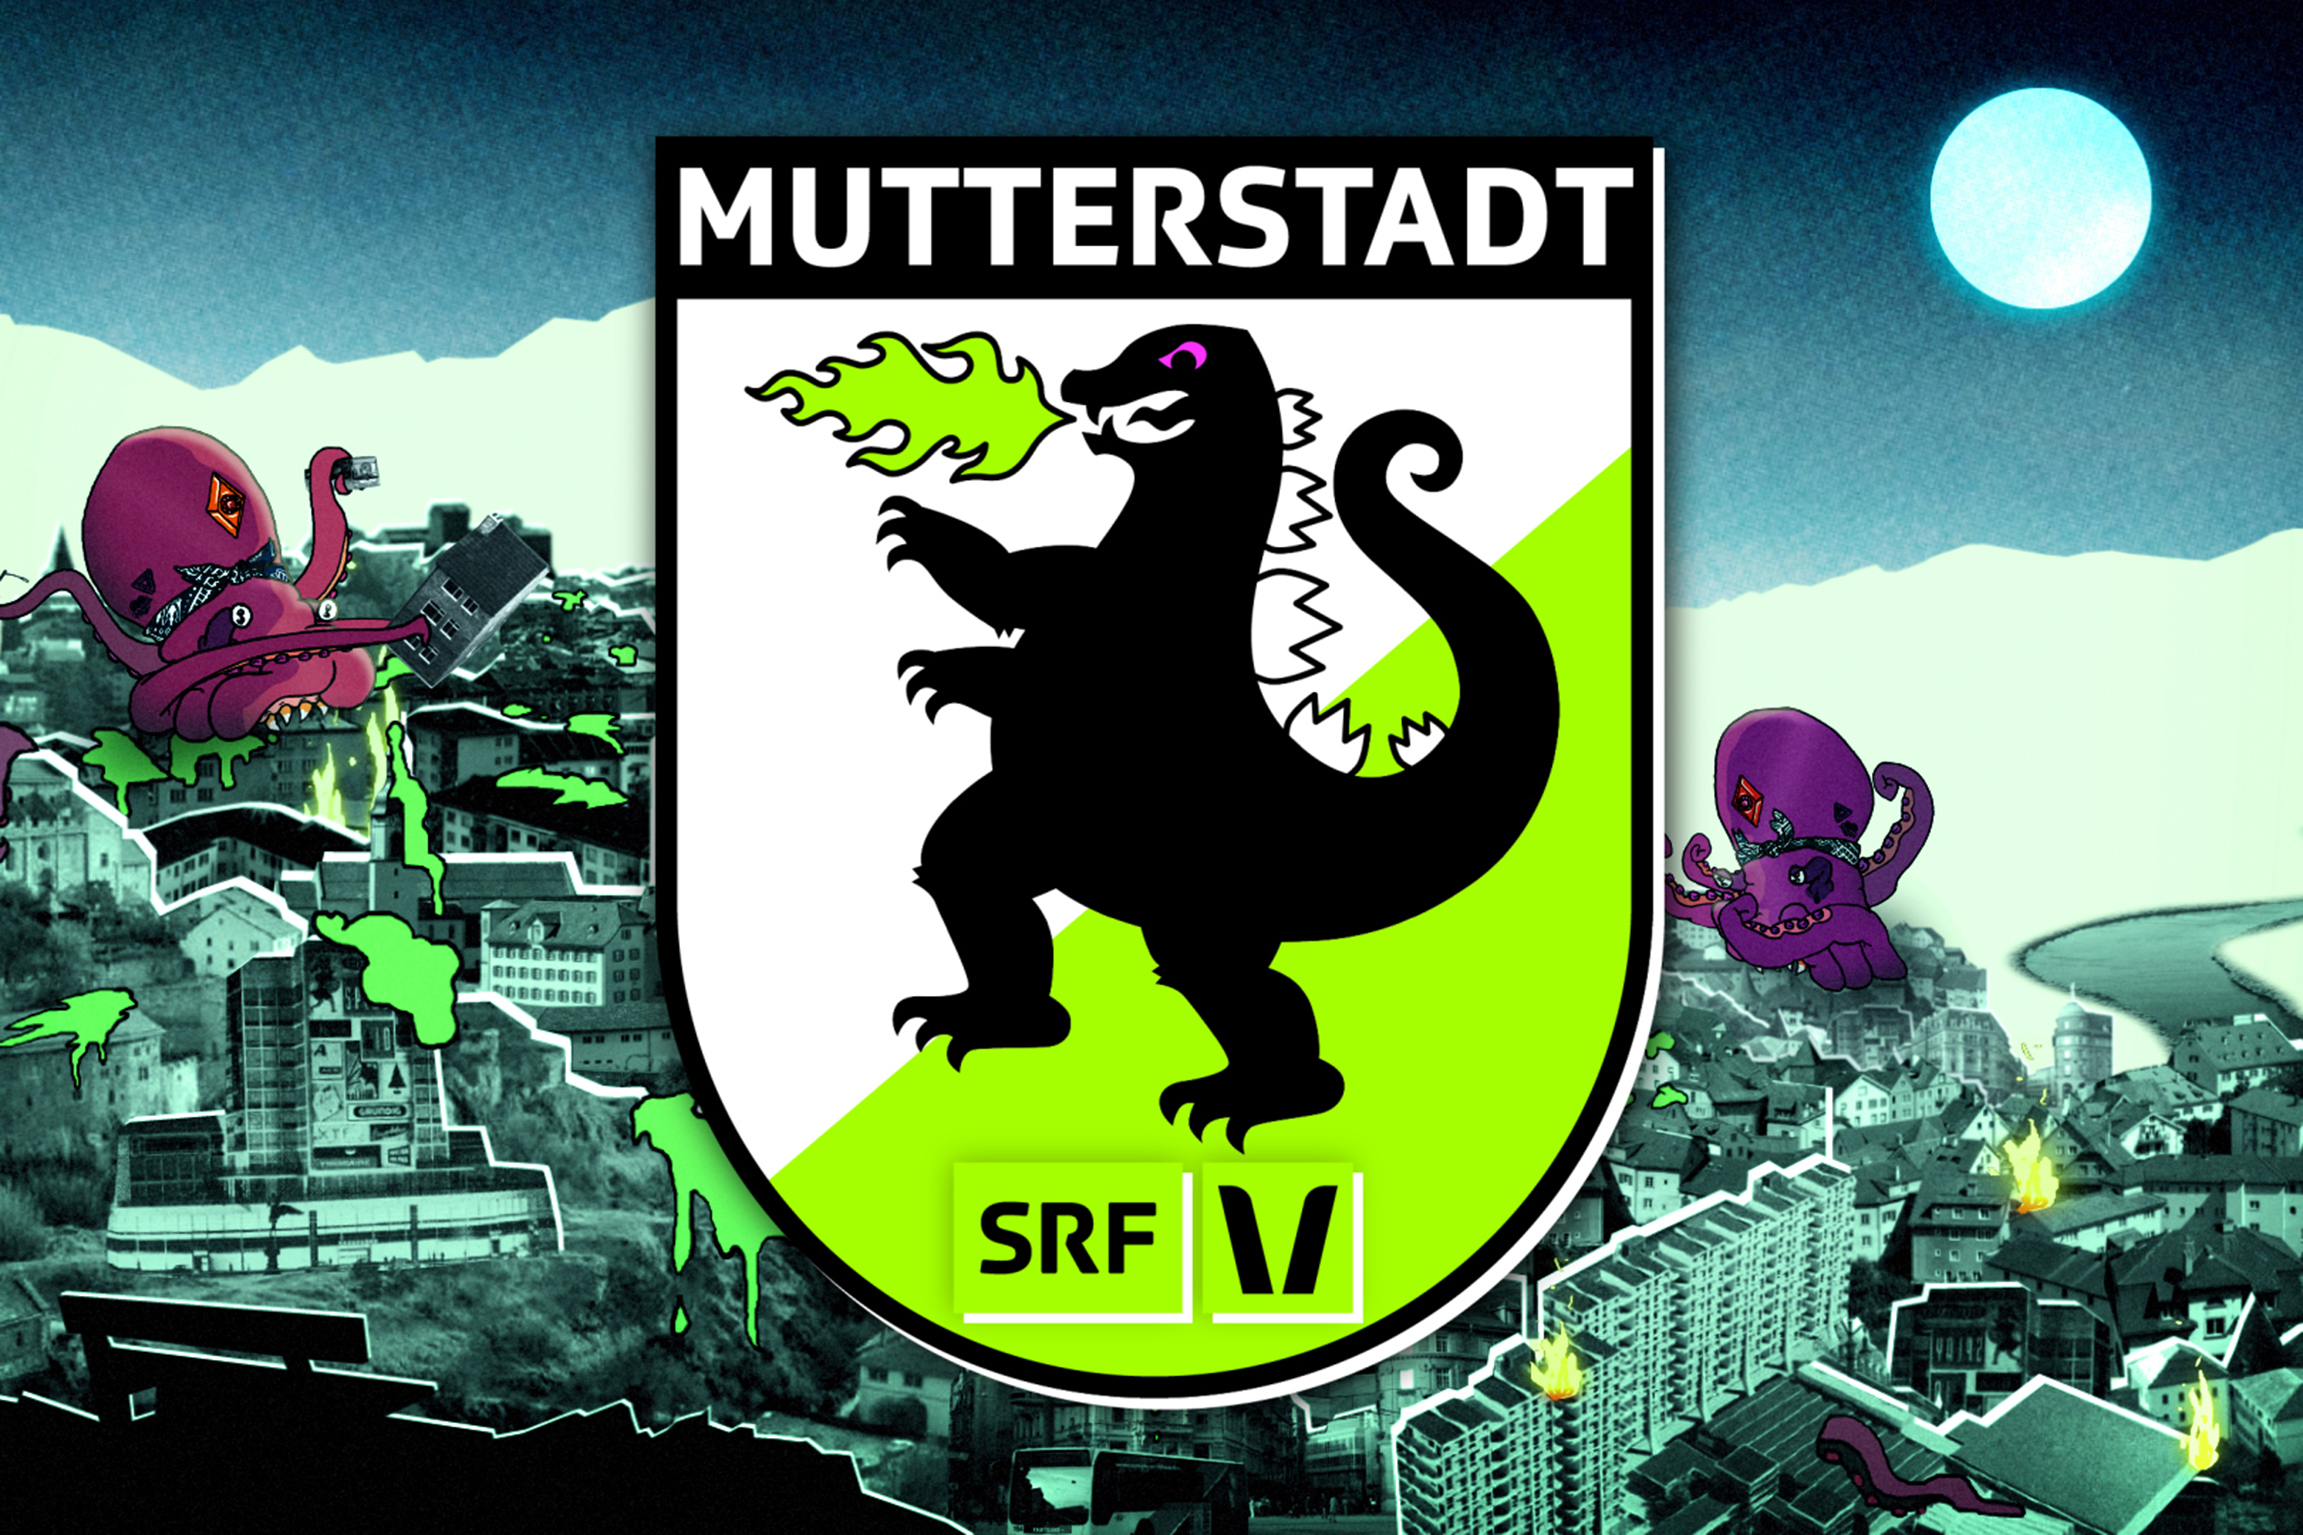 SRF Virus - Mutterstadt Keyvisual